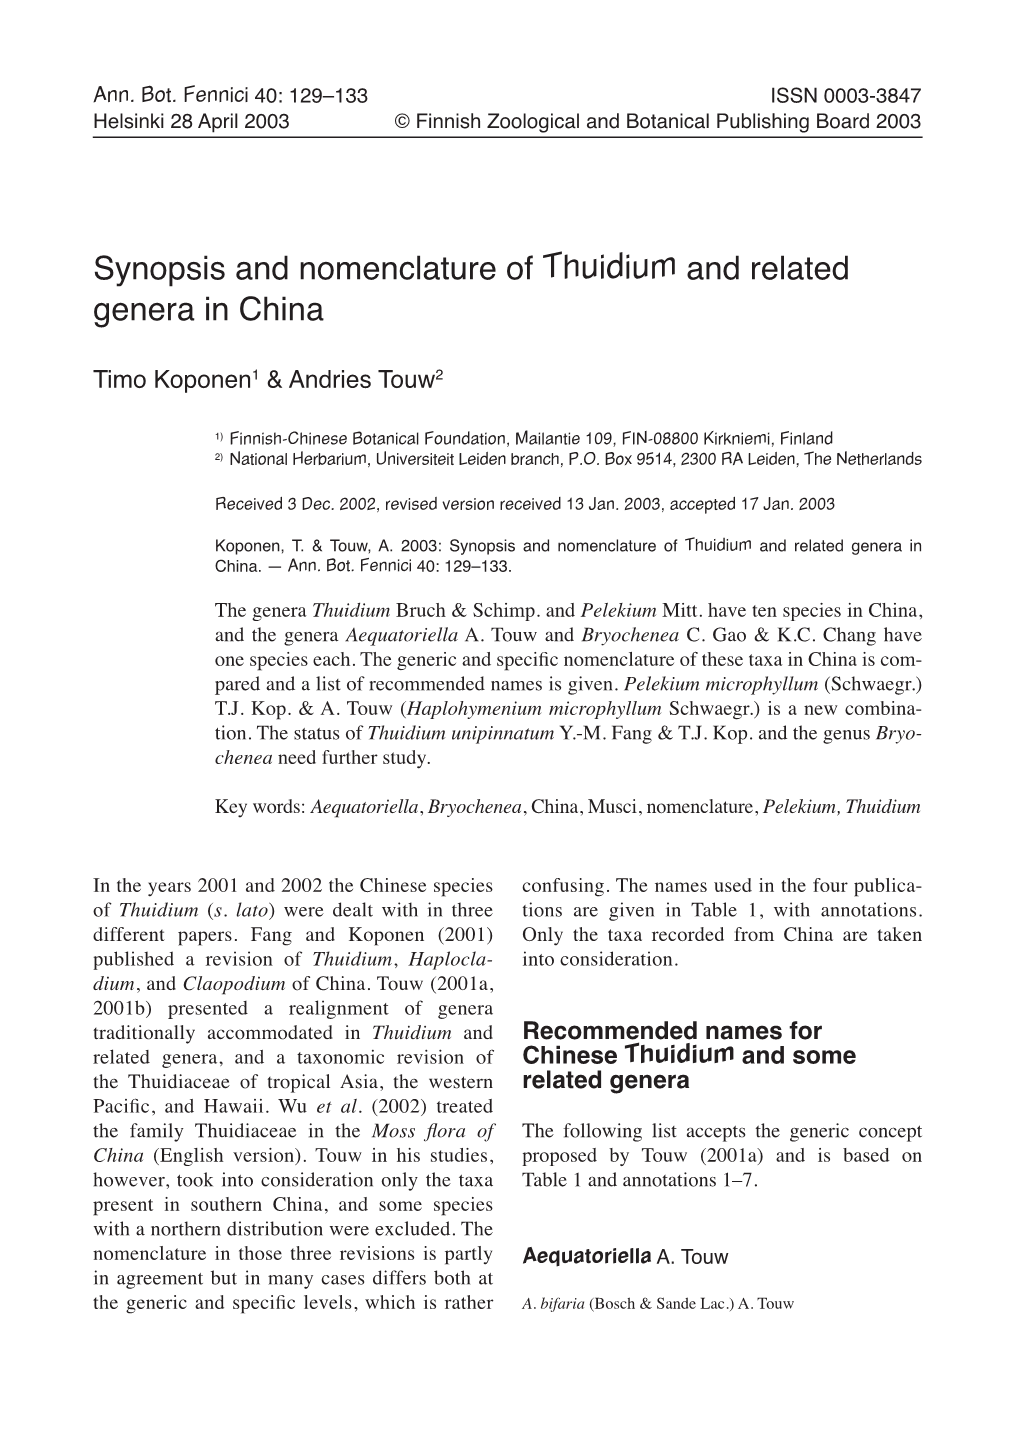 Thuidium and Related Genera in China